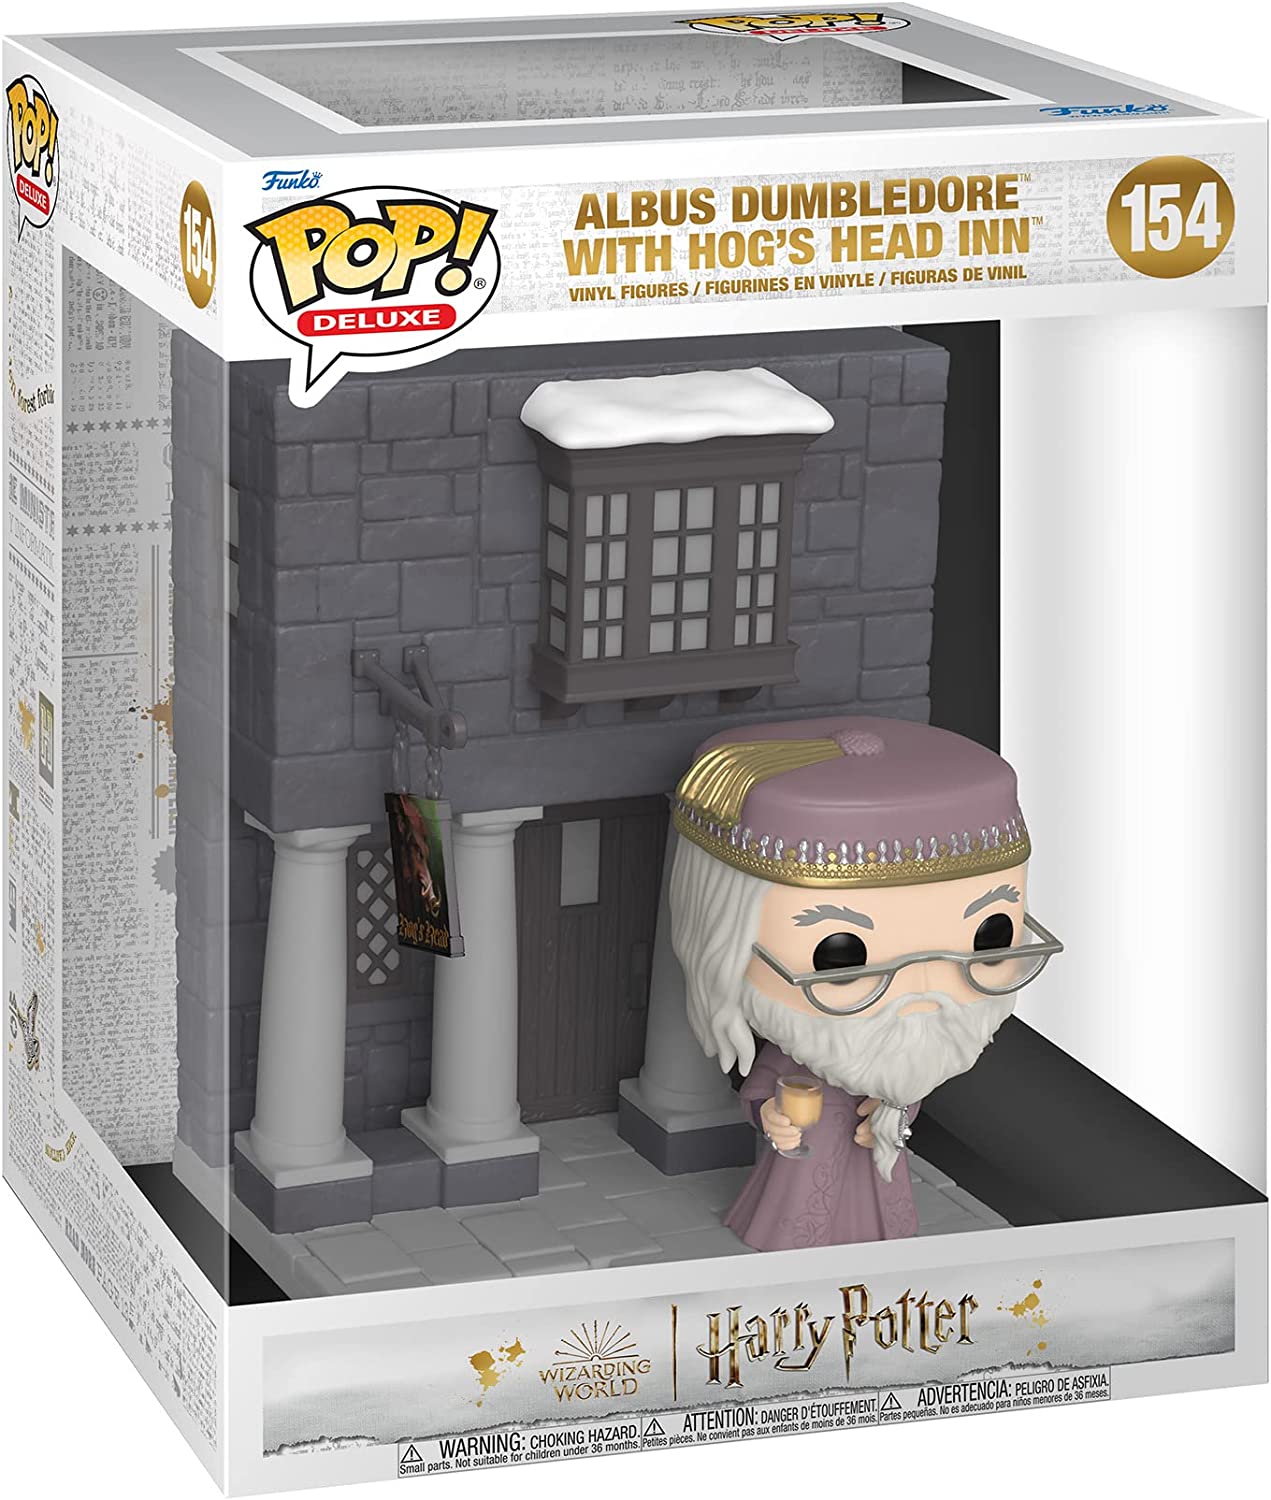 Funko POP! Deluxe: Harry Potter - Albus Dumbledore with Hog's Head Inn